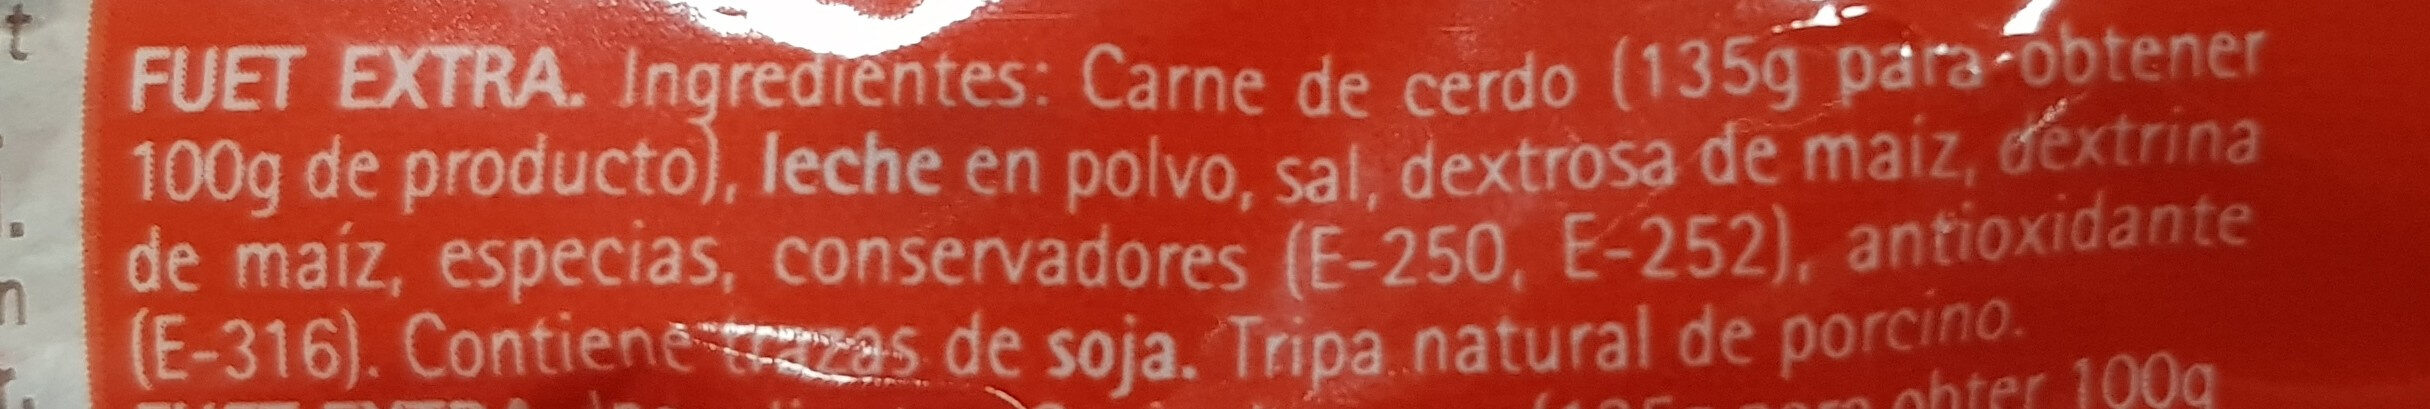 Fuet Casero Duplo El Pozo - Ingredients - es